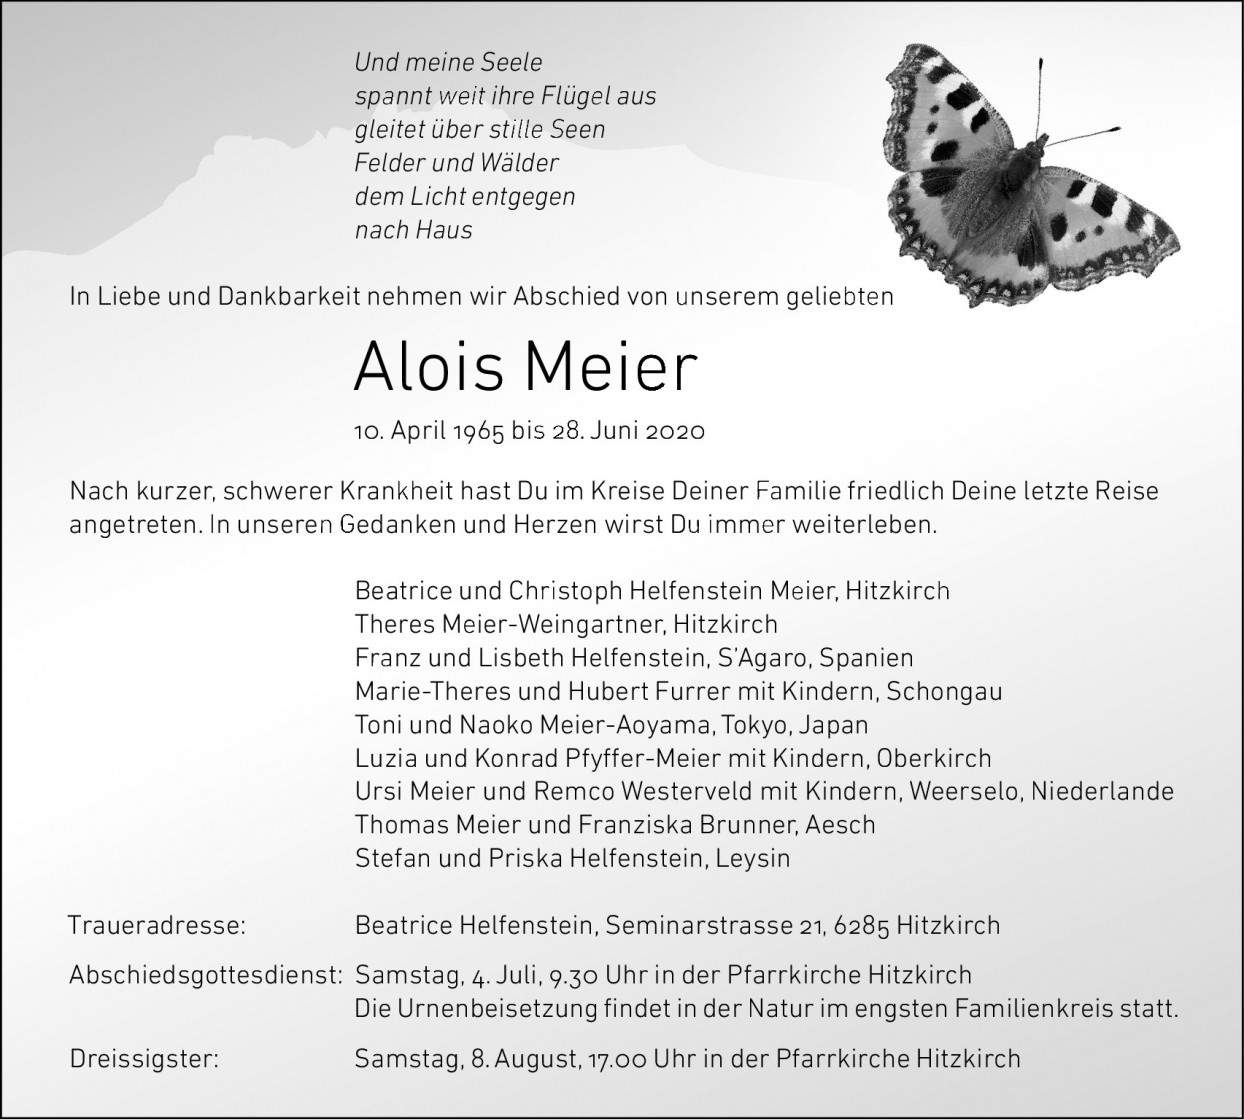 Alois Meier